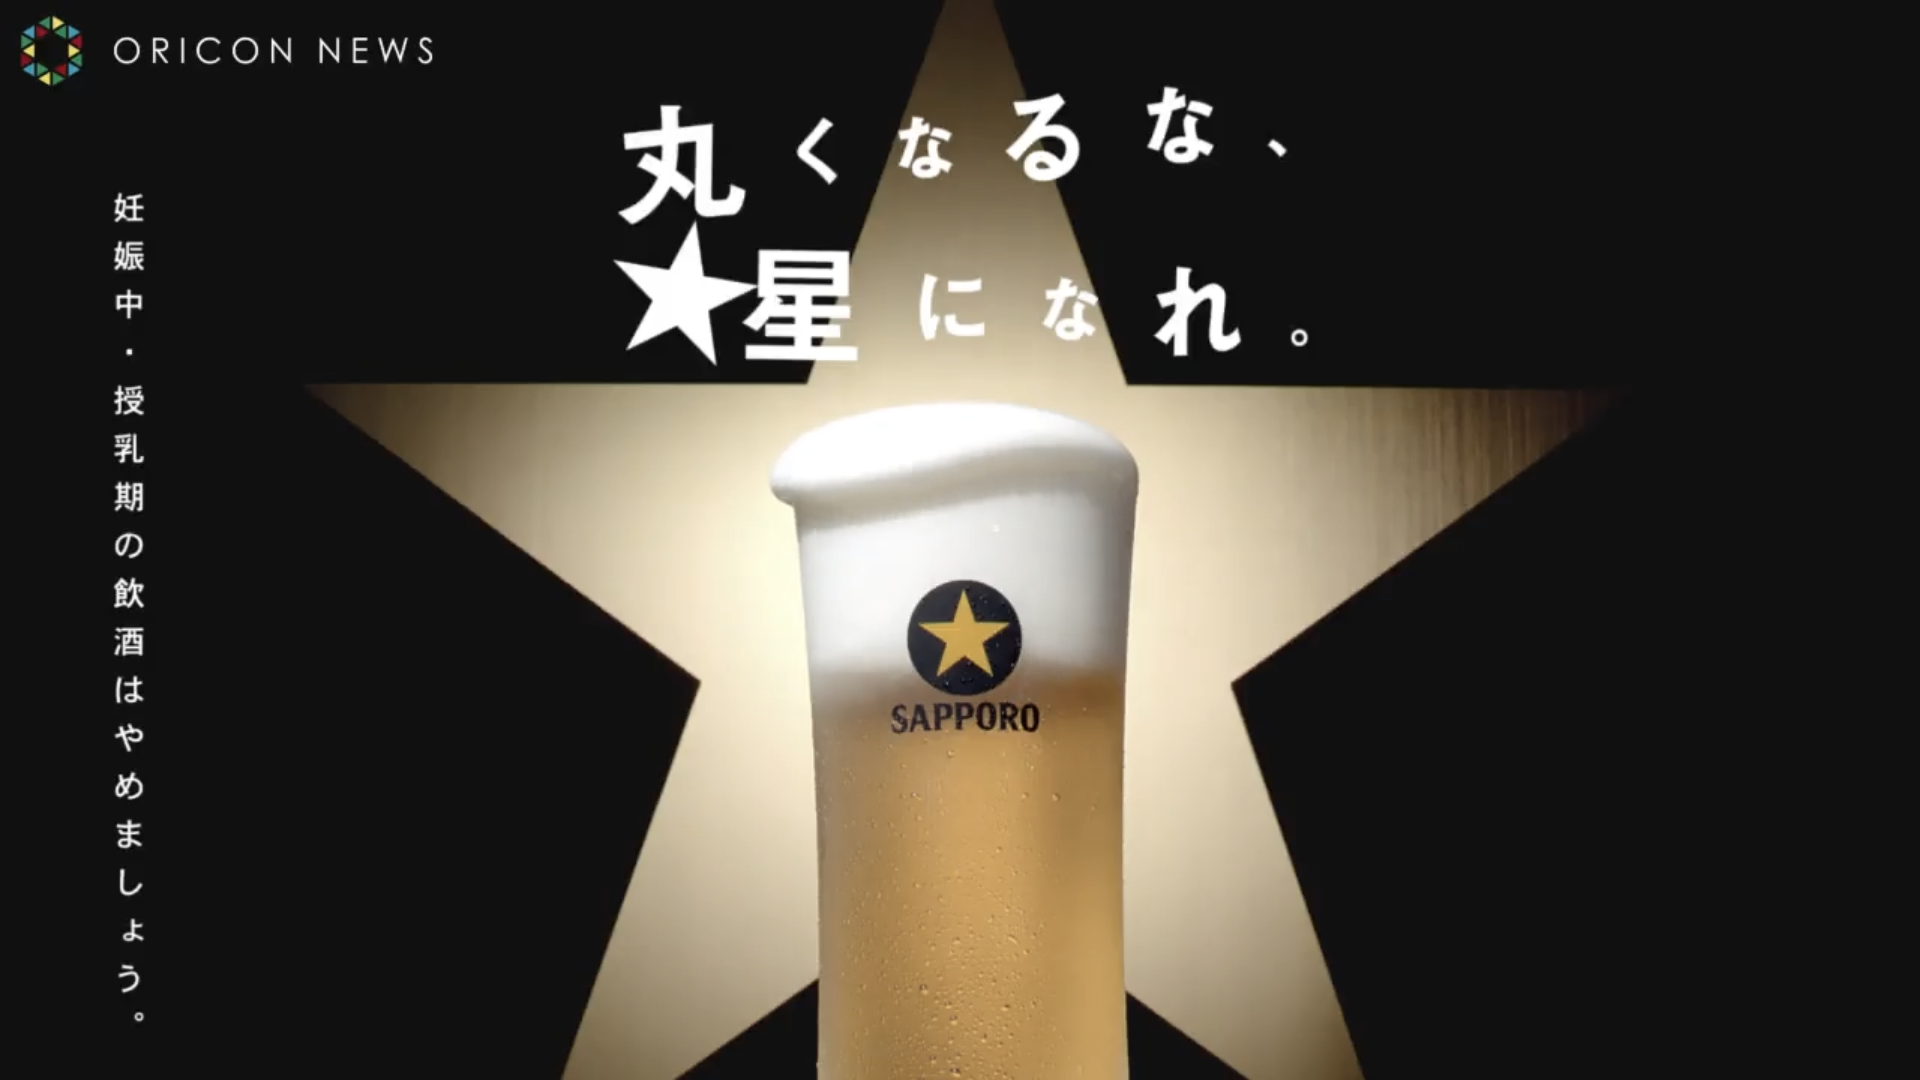 黑牌生啤酒 「36岁 星野源系列」广告